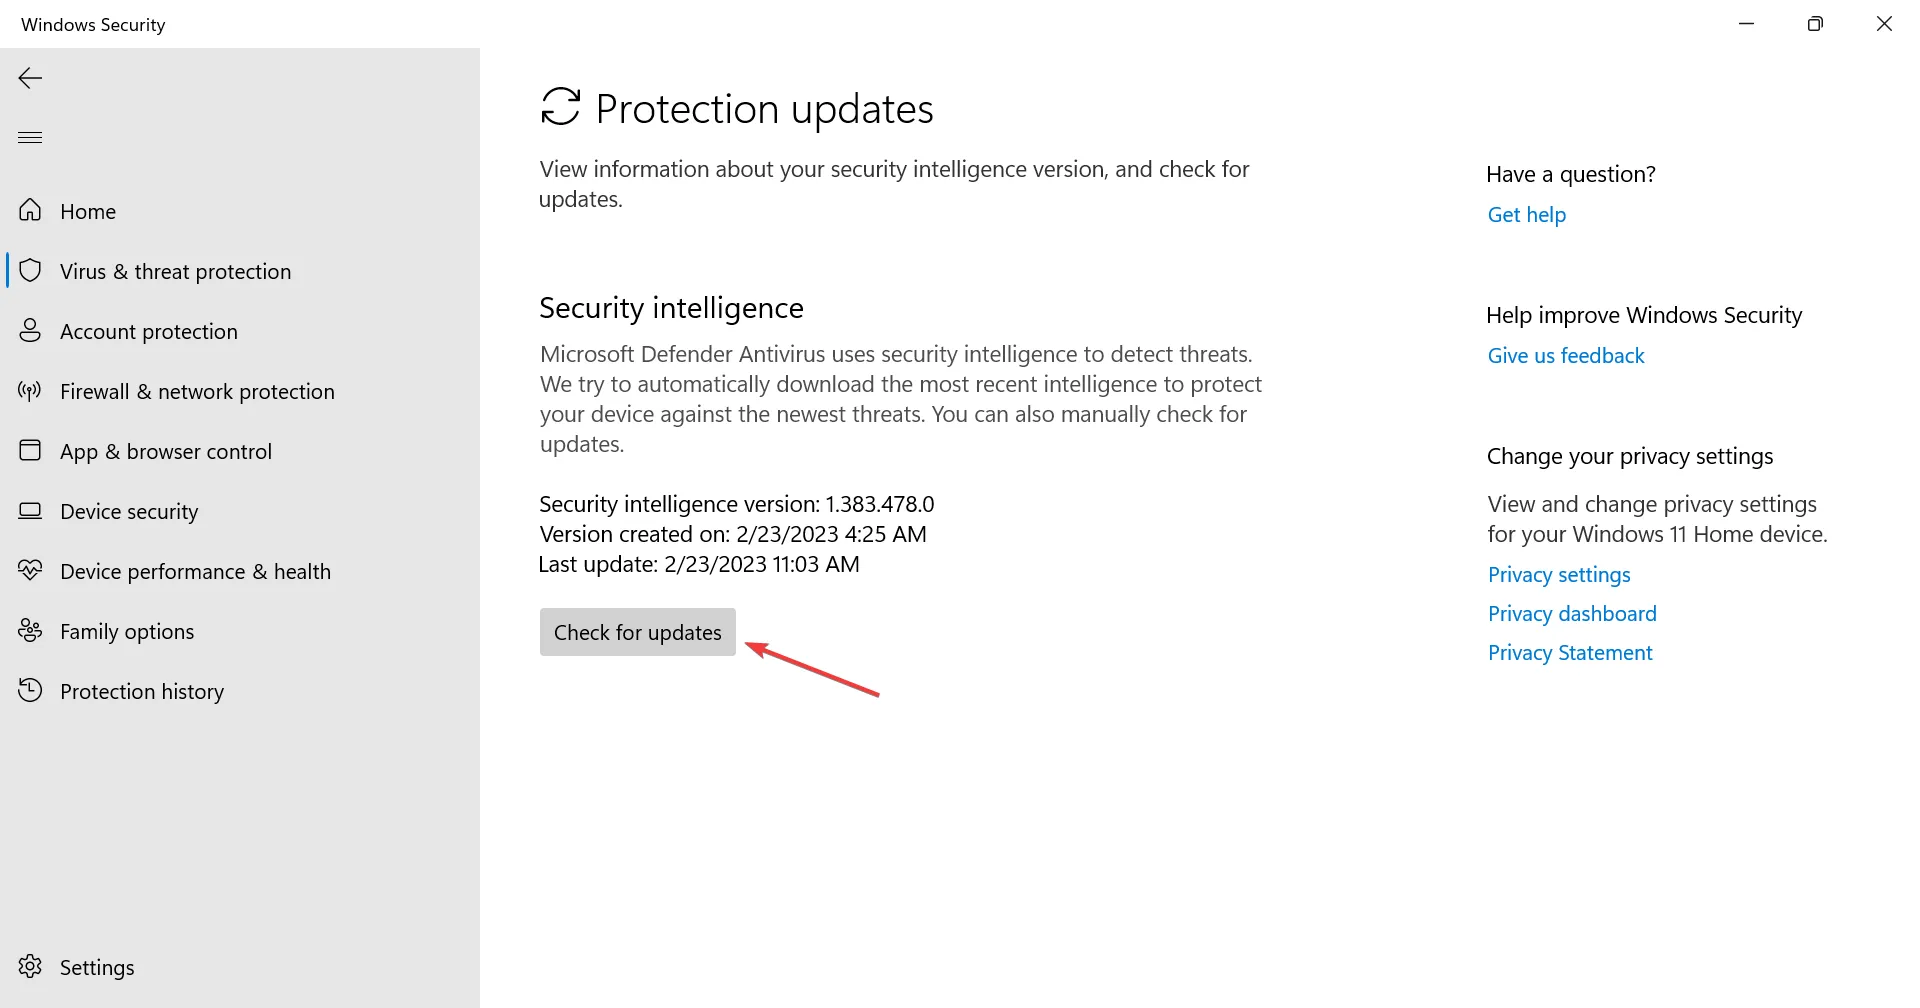 Suchen Sie nach Updates, um die empfohlenen Windows-Sicherheitsmaßnahmen zu beheben